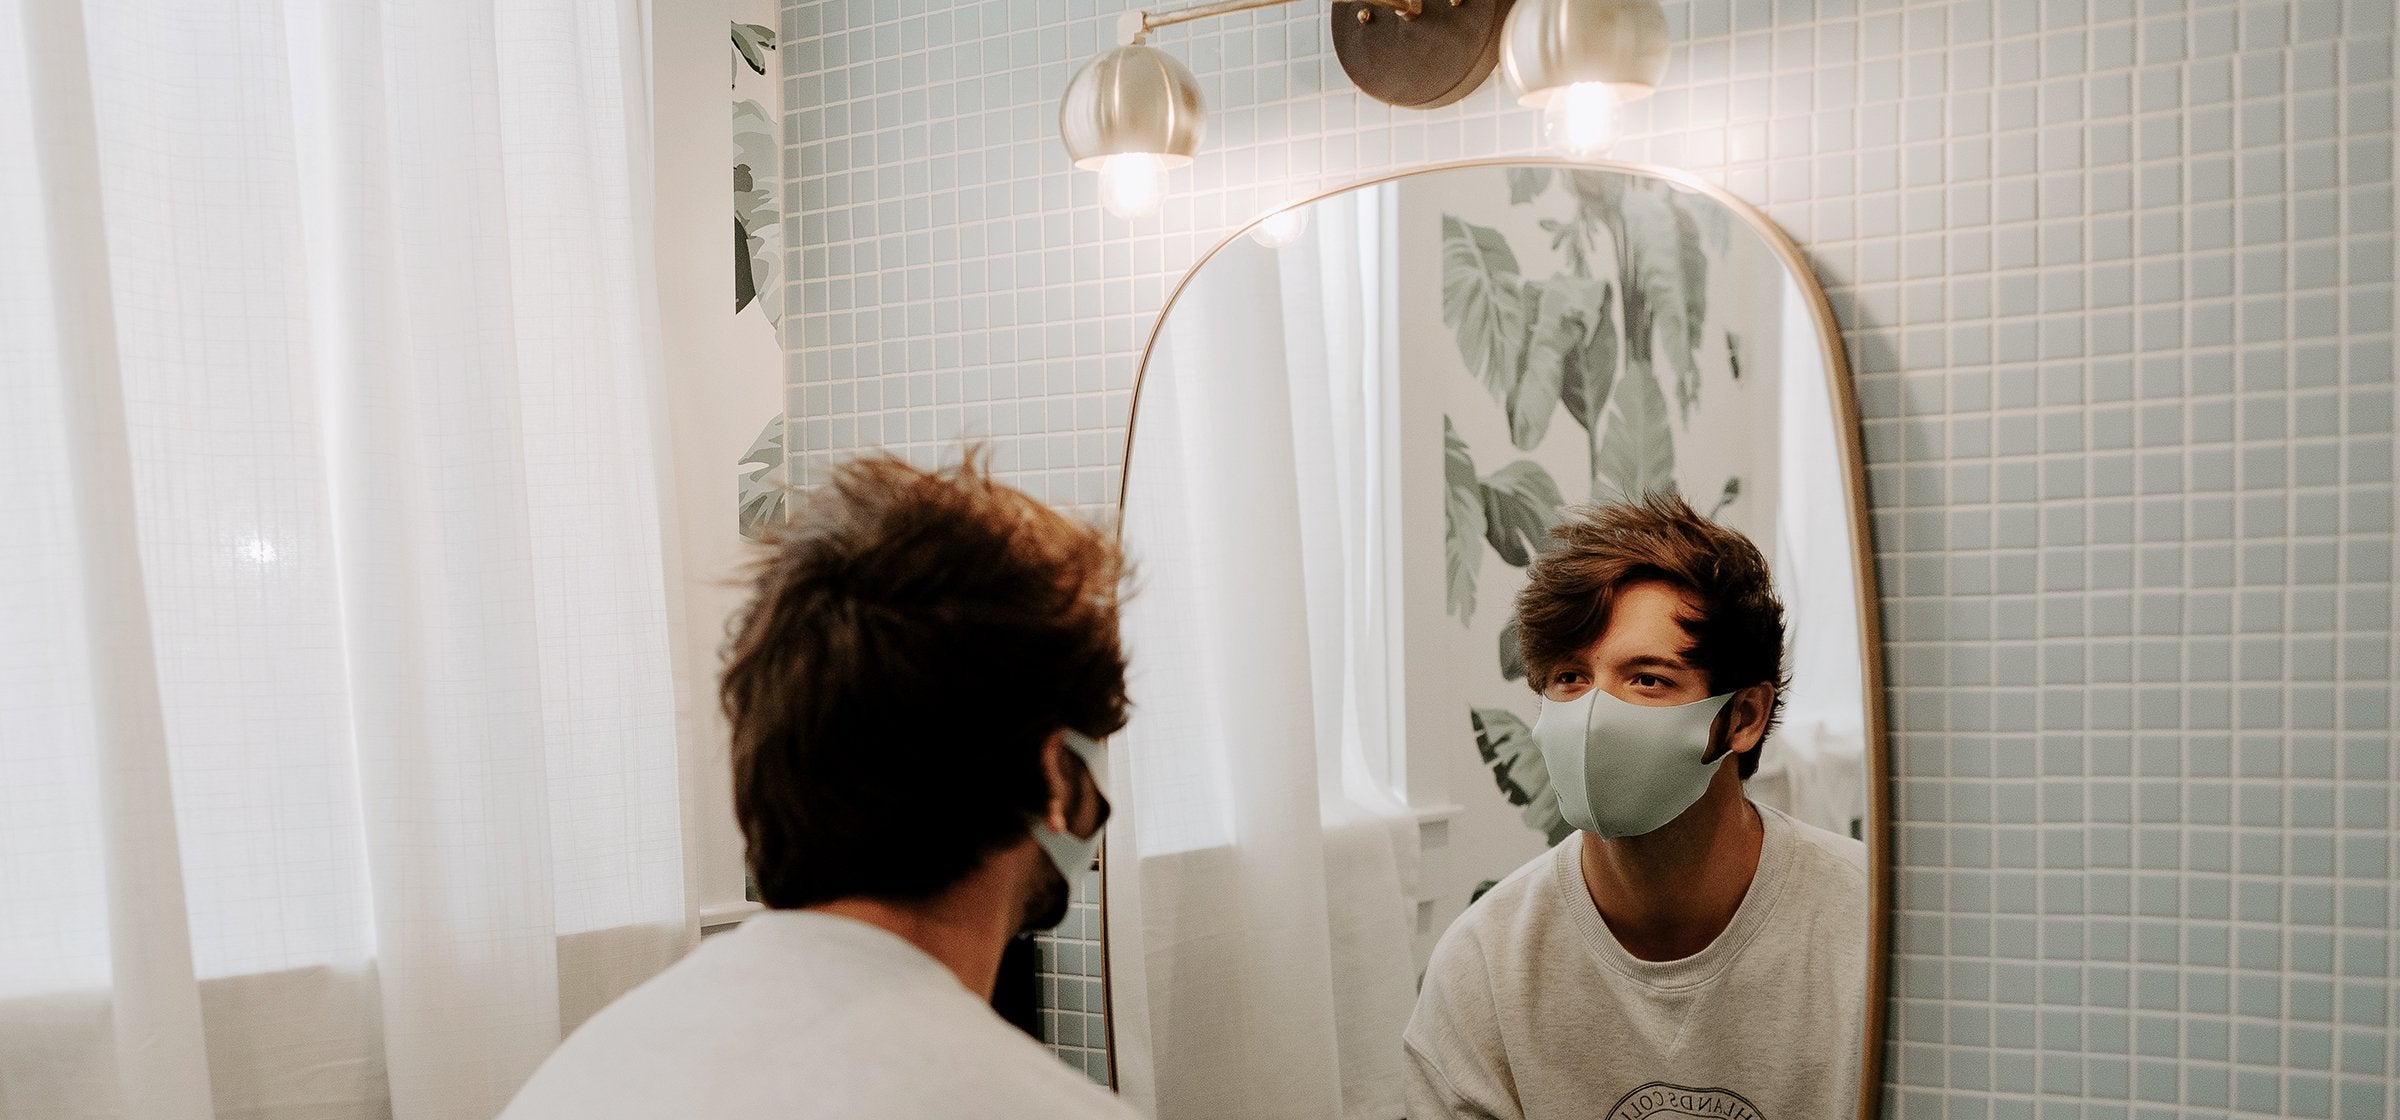 Mann steht in einem Badezimmer und betrachtet sich im Spiegel. Er trägt dabei eine Mundschutzmaske.